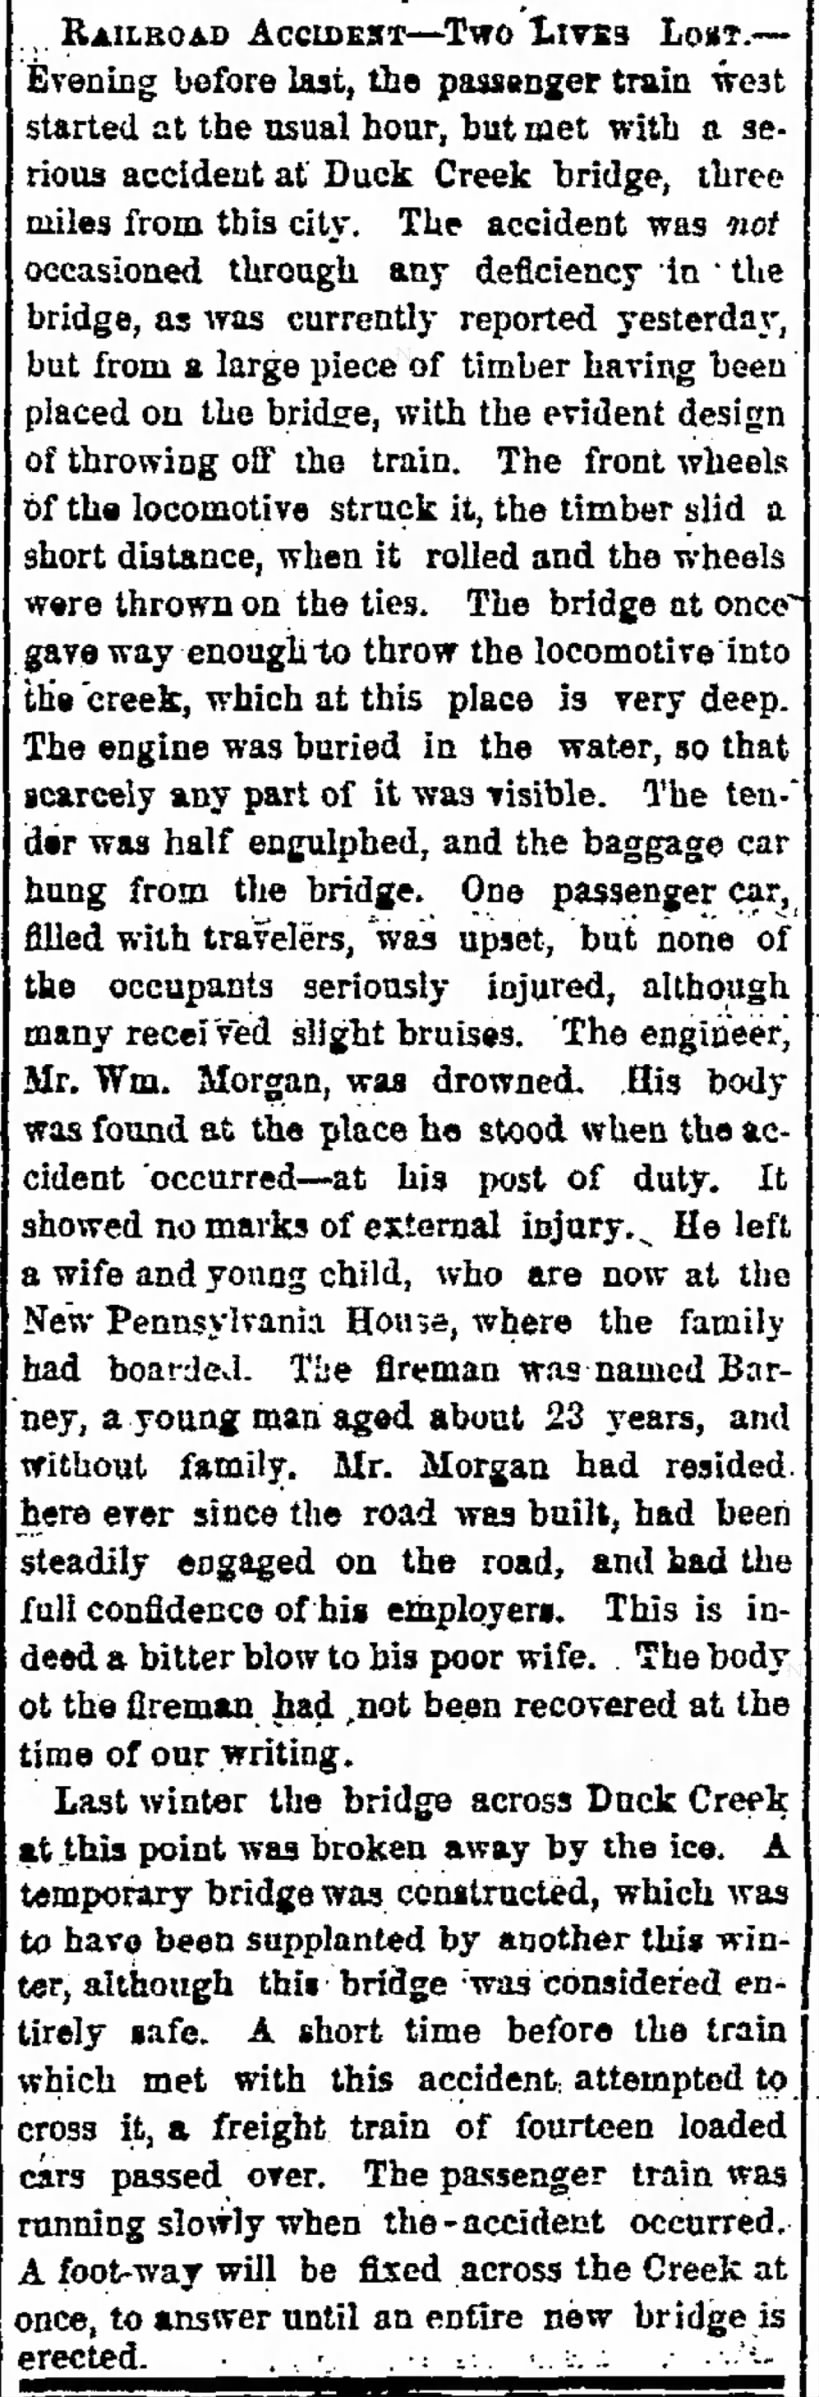 railroad accident at Duck Creek 28 dec 1857